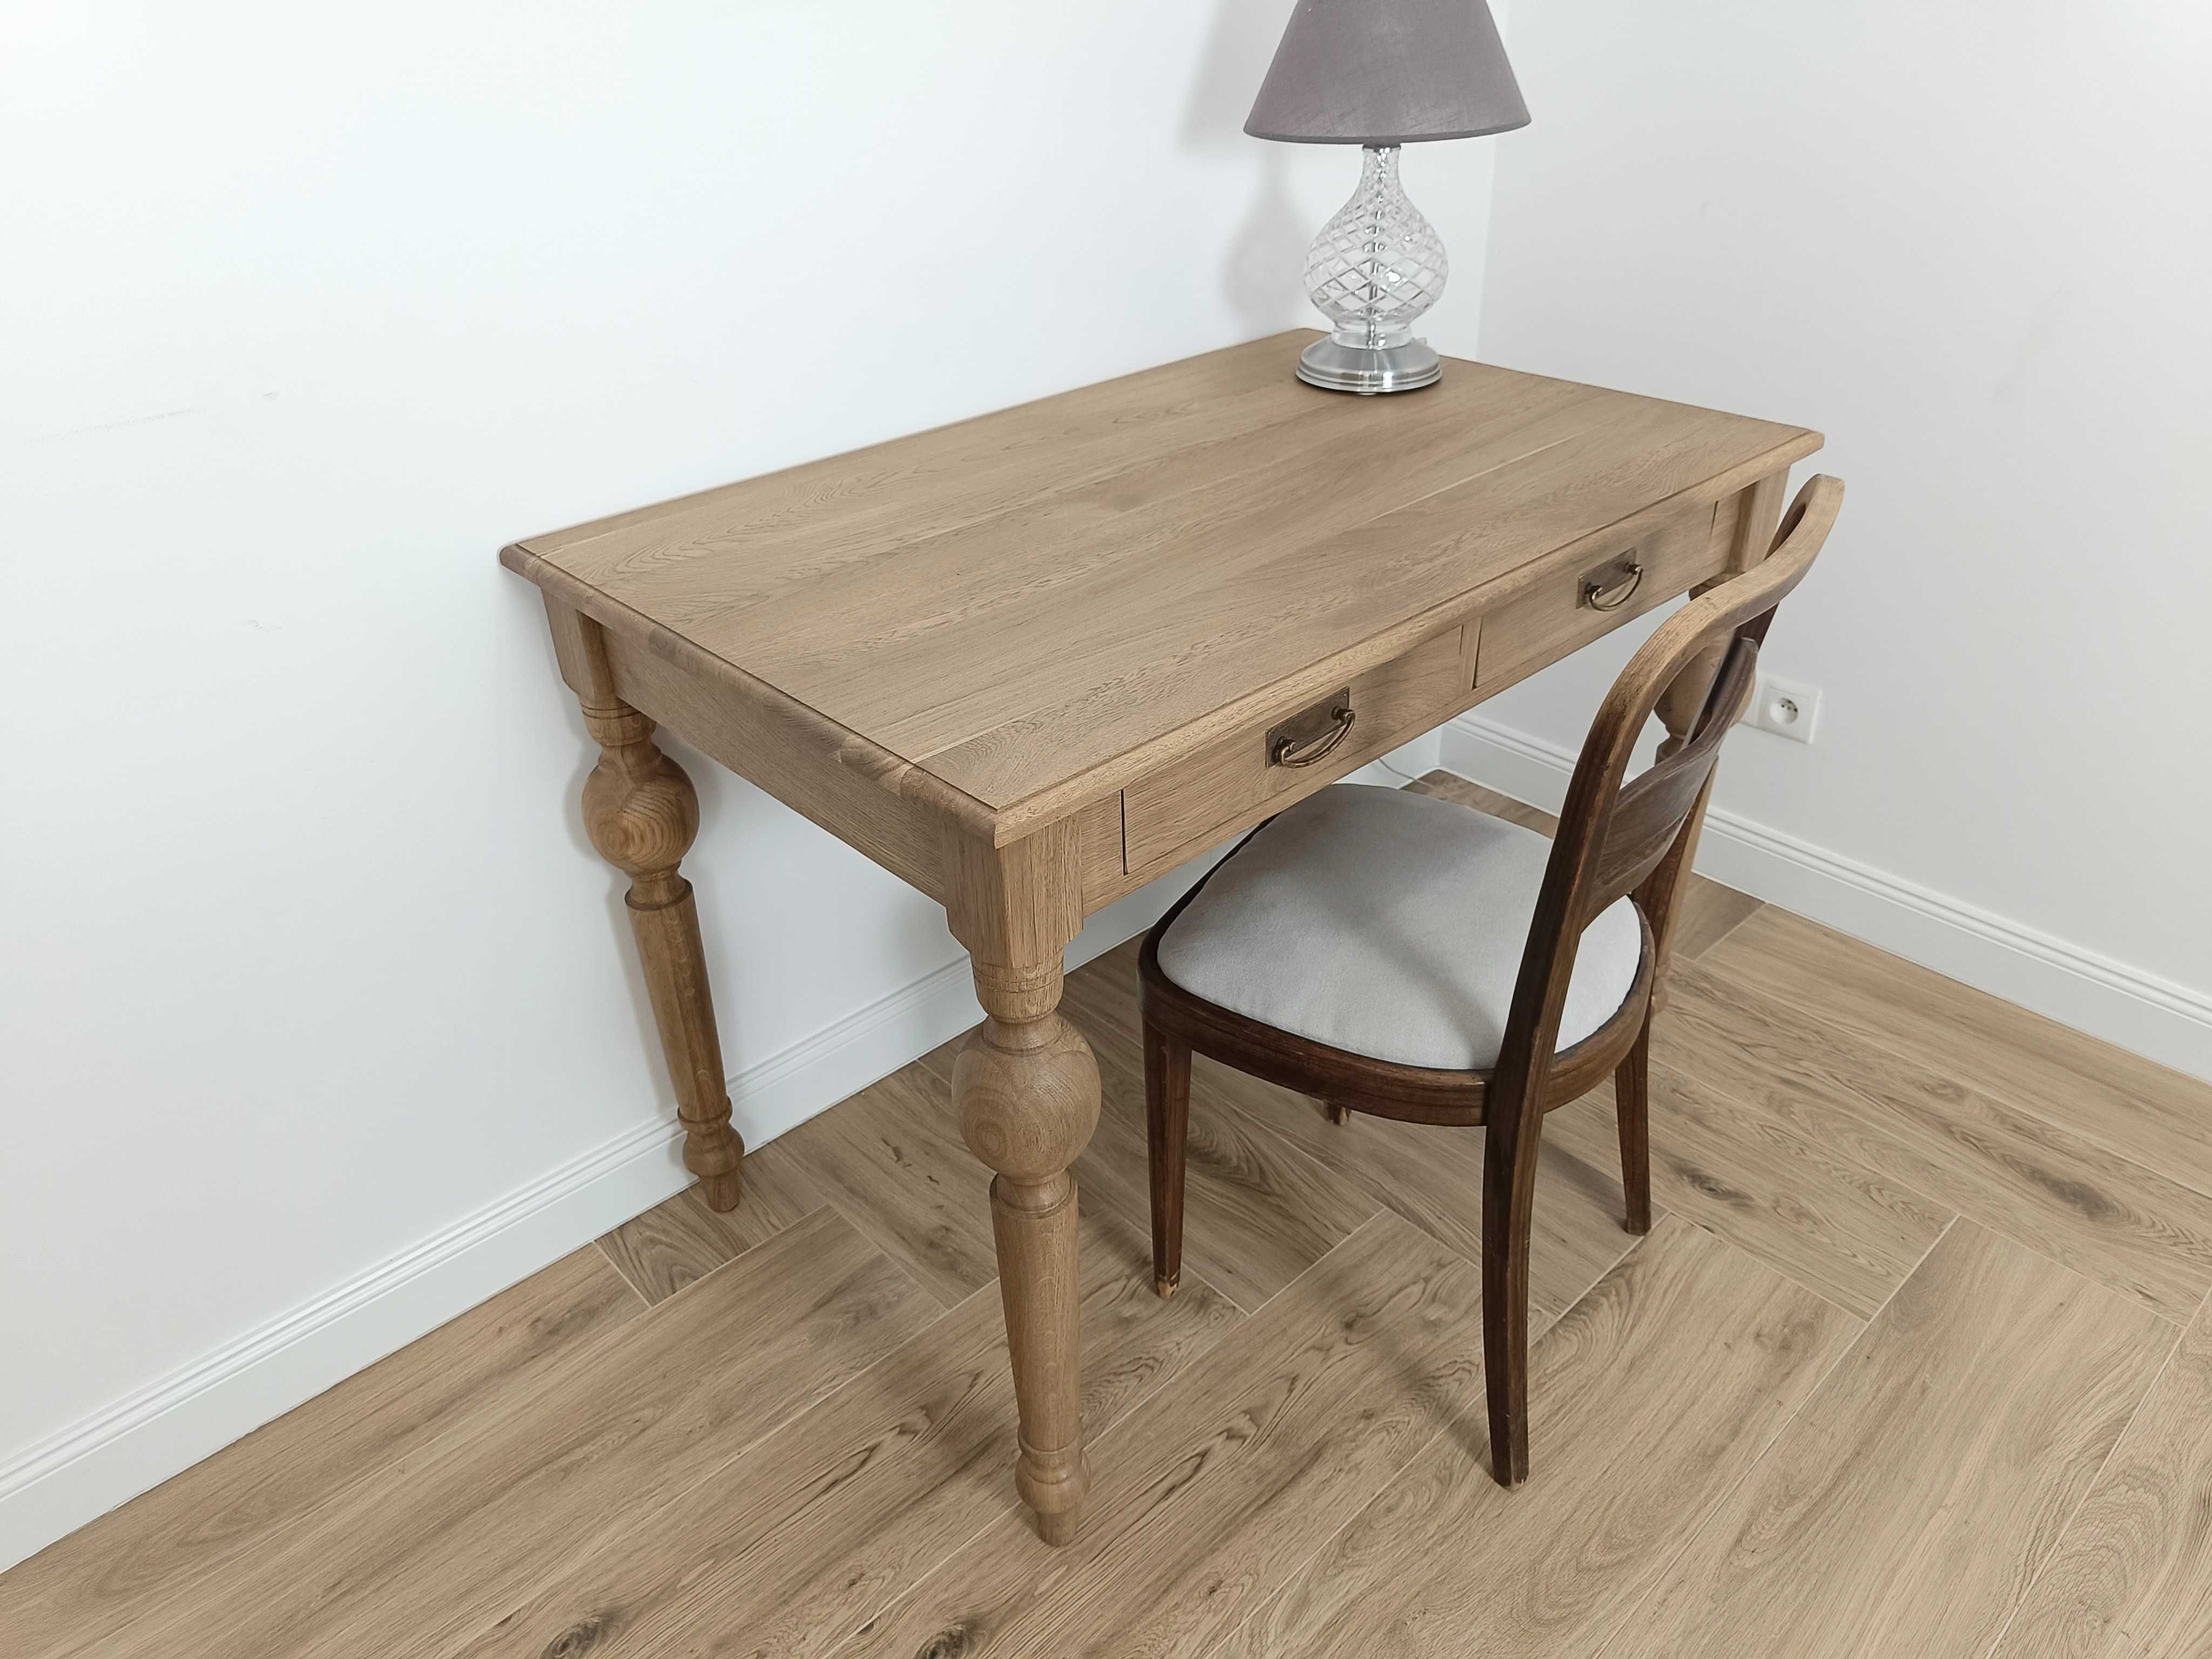 Stół biurko 110/70 dębowy stylizowany na stary antyk lity dąb